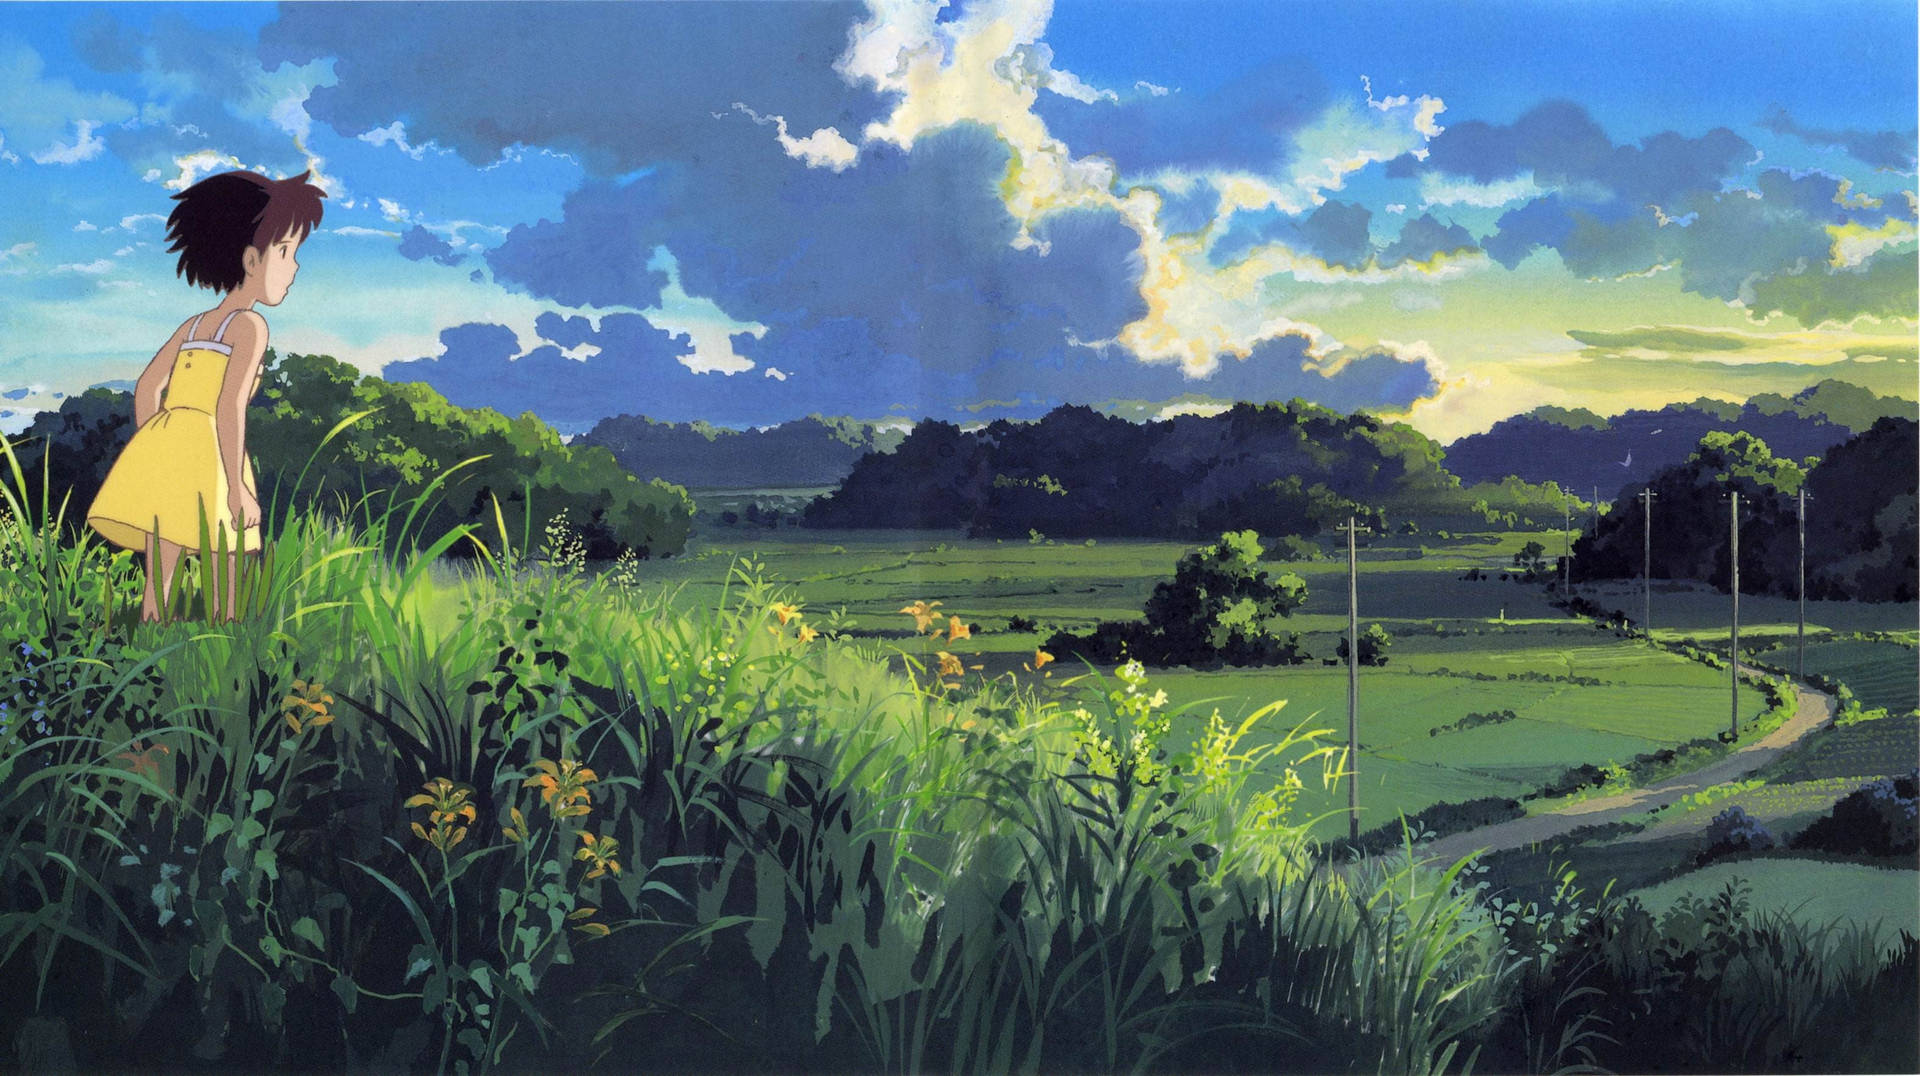 Studio Ghibli Scenery Girl In Field Wallpaper